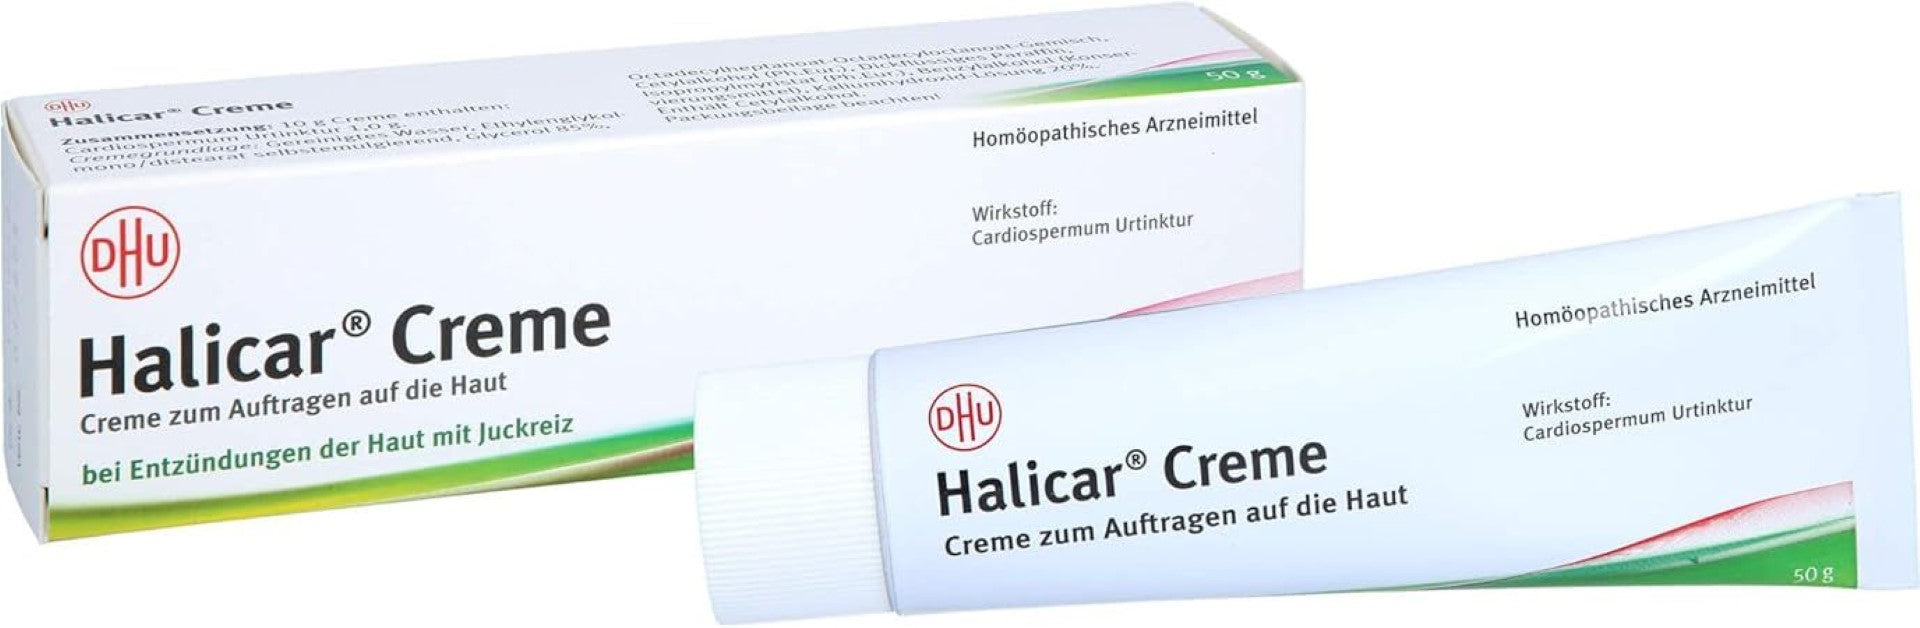 DHU Halicar Creme, bei Entzündungen der Haut mit Juckreiz, 50 g Cream